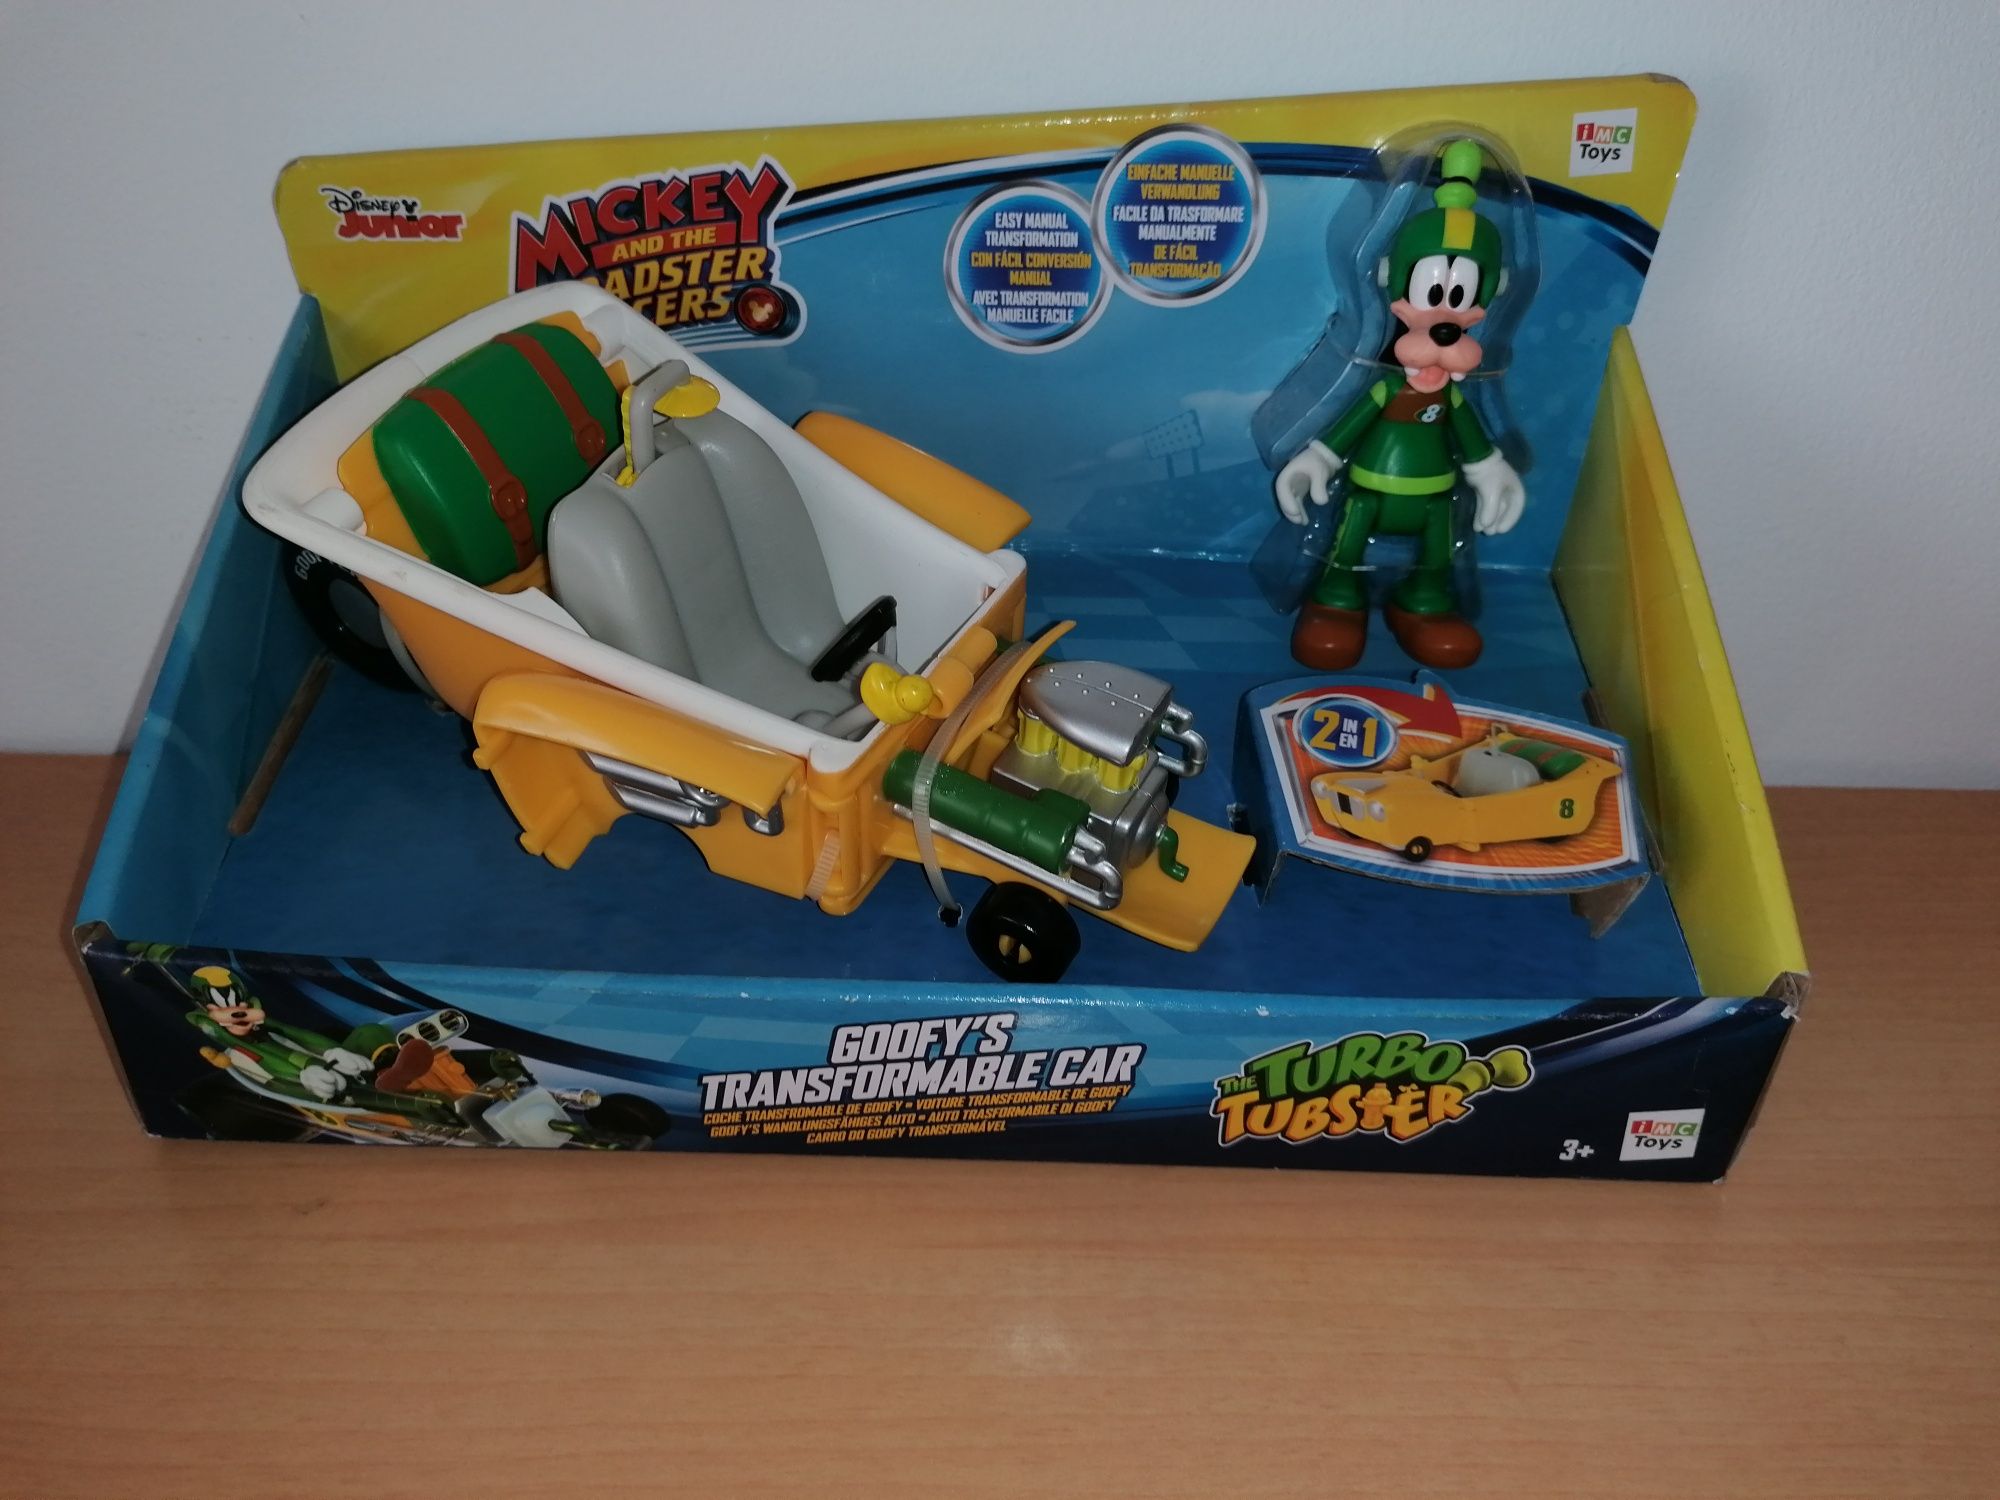 ARTIGO NOVO – Mickey Super Pilotos - Pateta Turbo Tubster 2 em 1